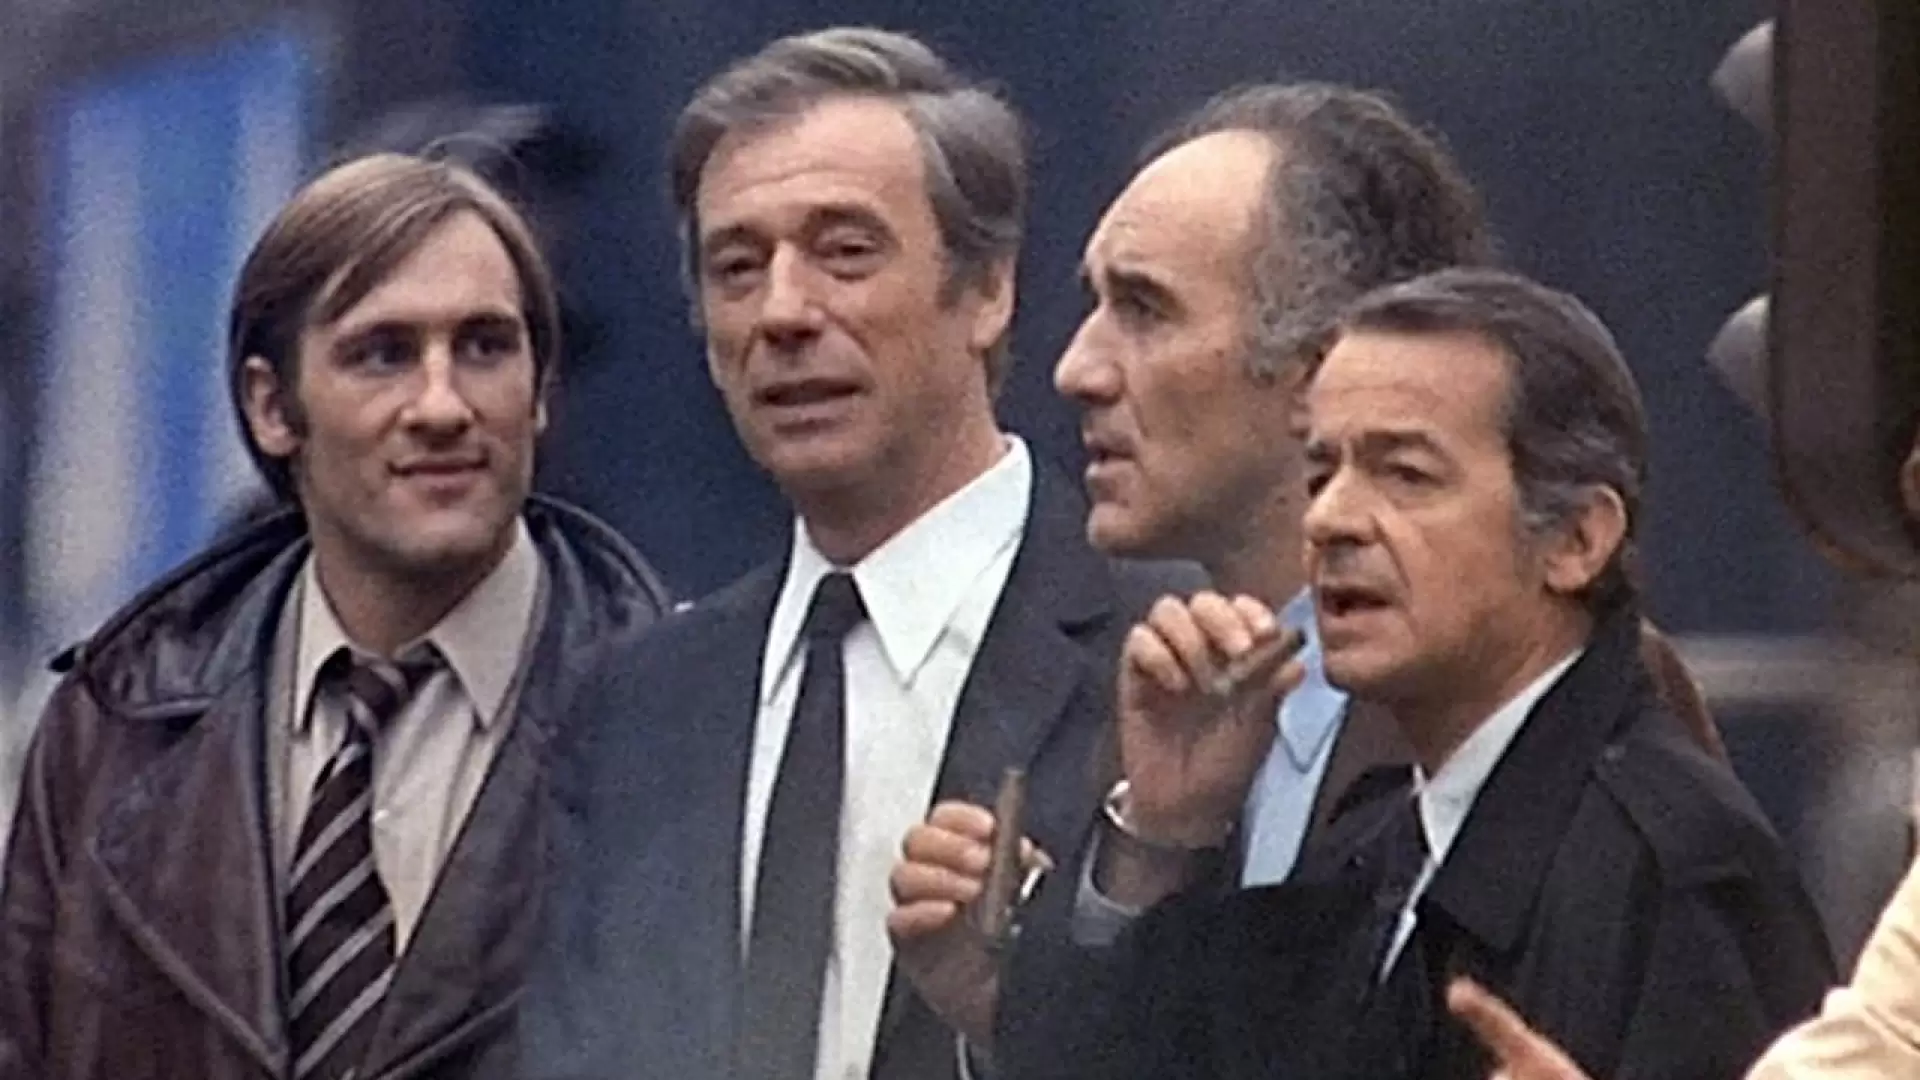 دانلود فیلم Vincent, François, Paul and the Others 1974 با زیرنویس فارسی